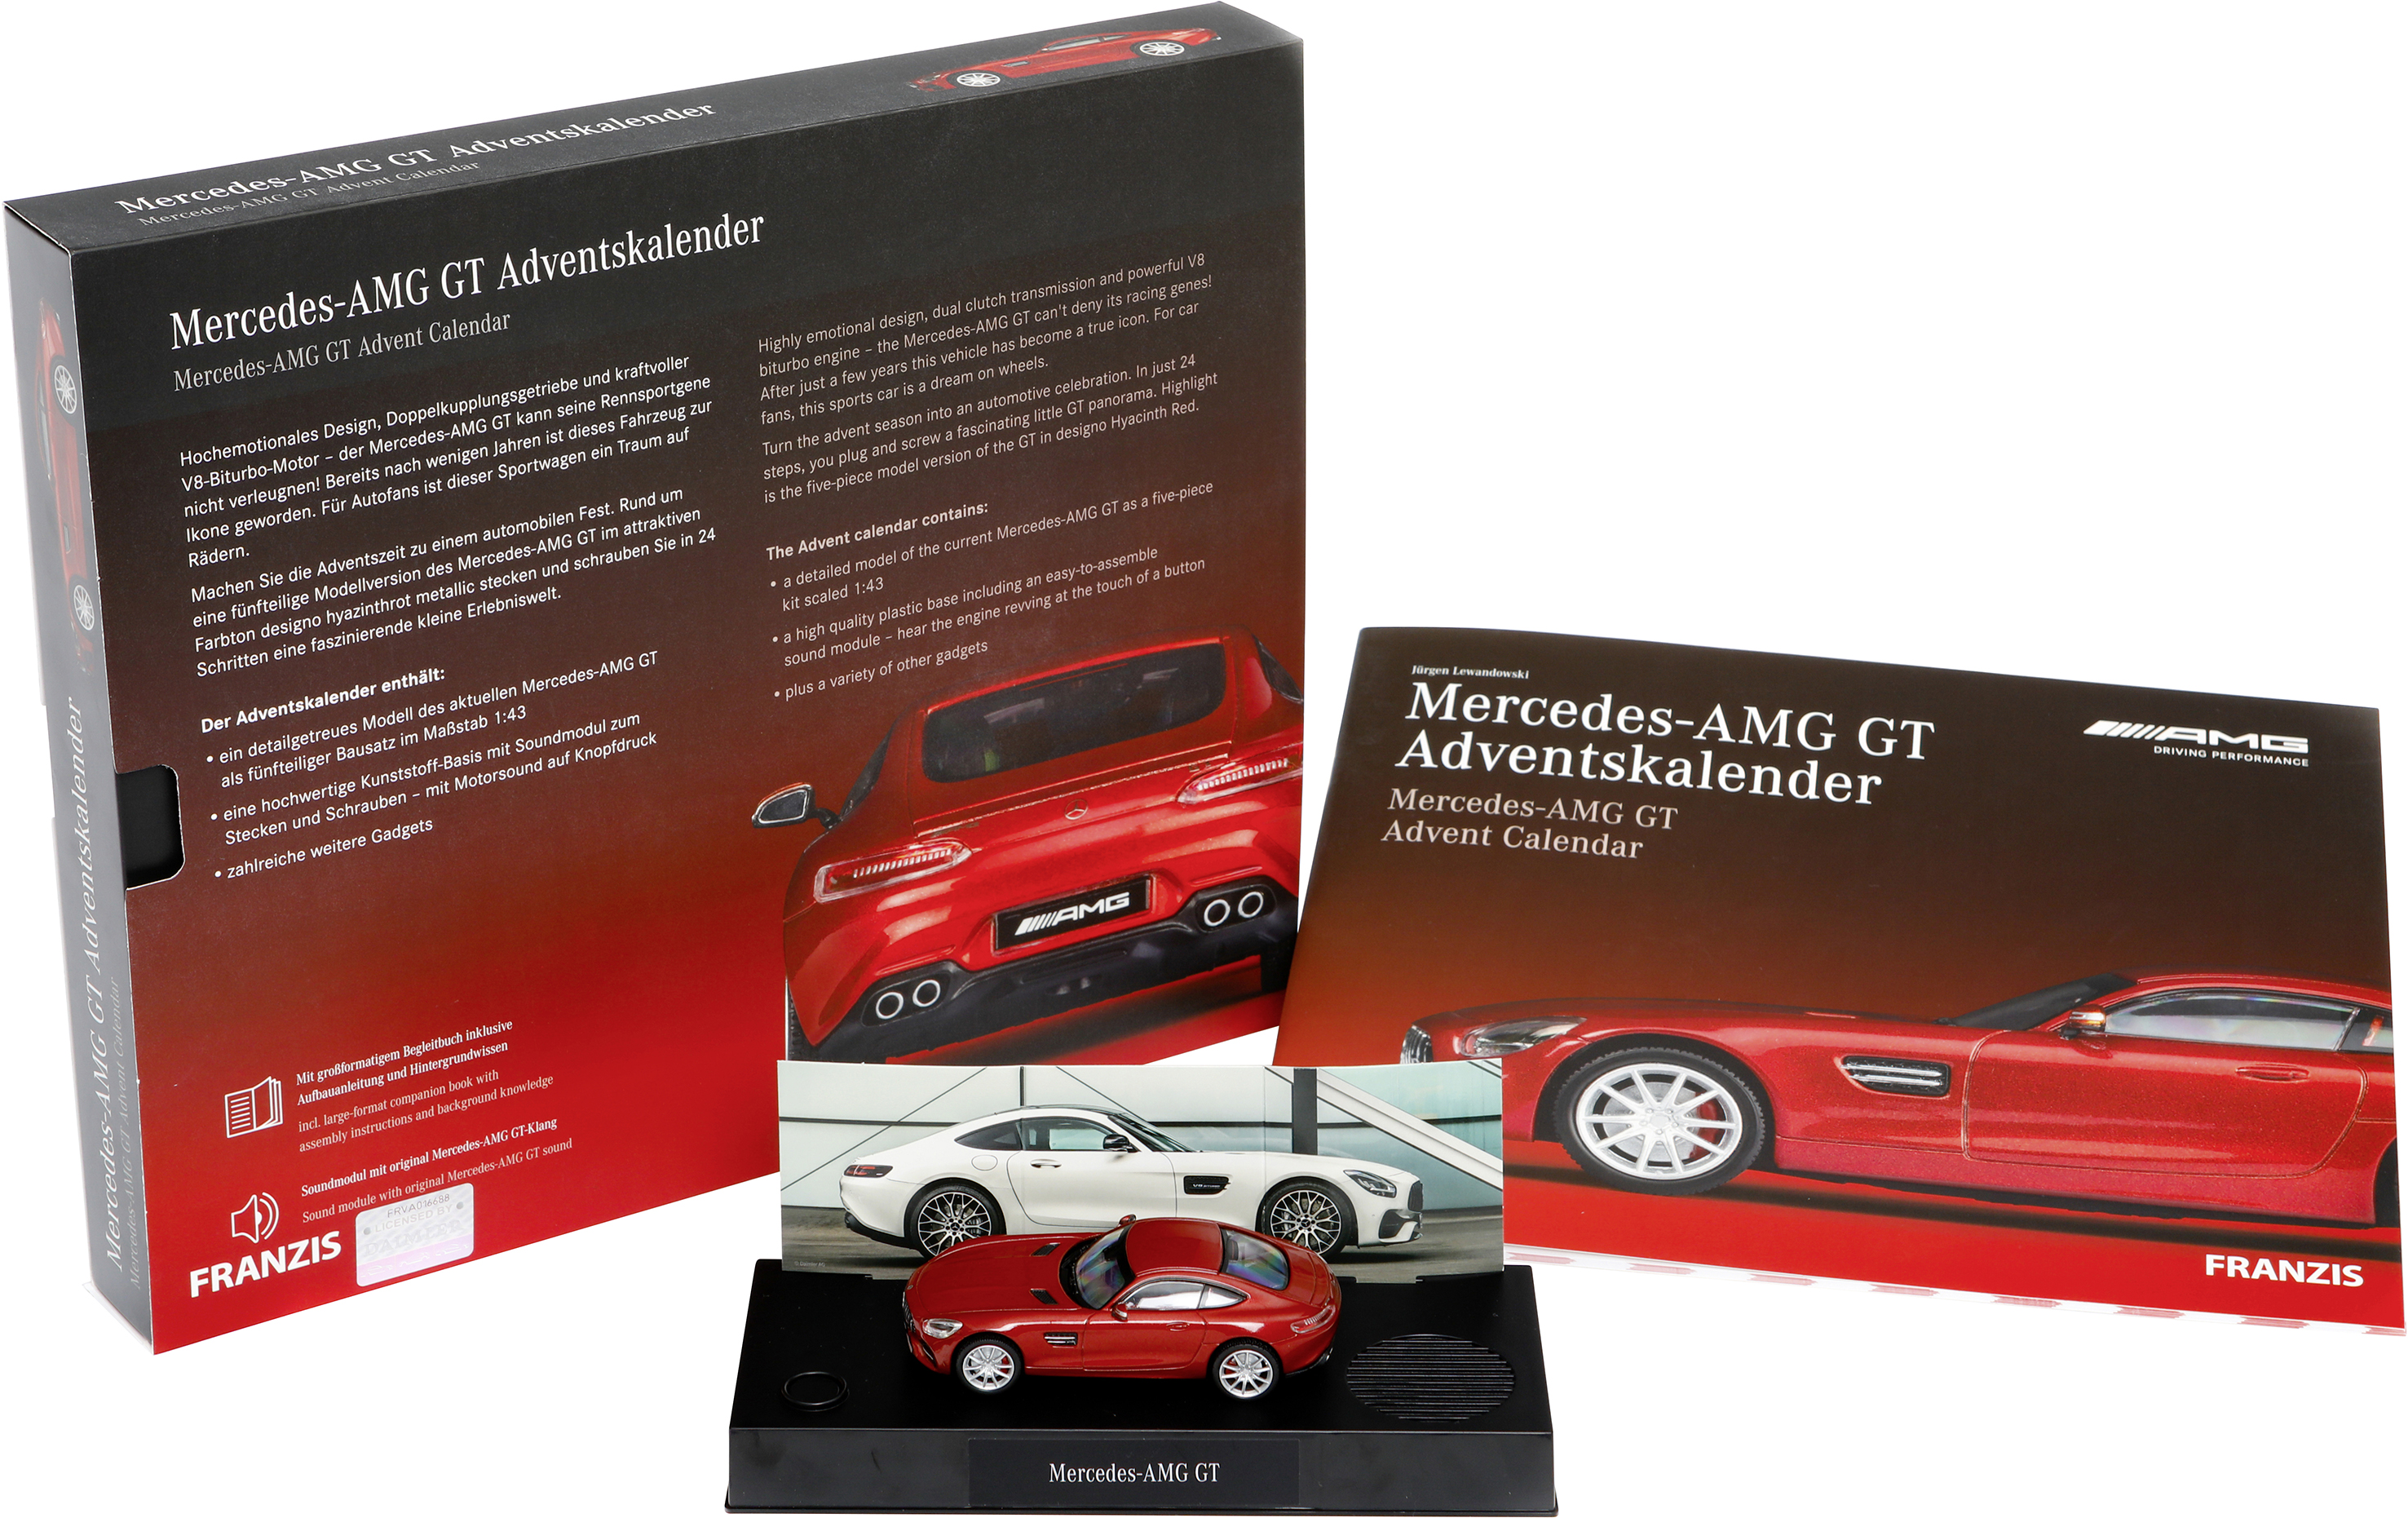 Franzis Verlag Mercedes-AMG GT Bausätze, Elektronik, Technik Adventskalender